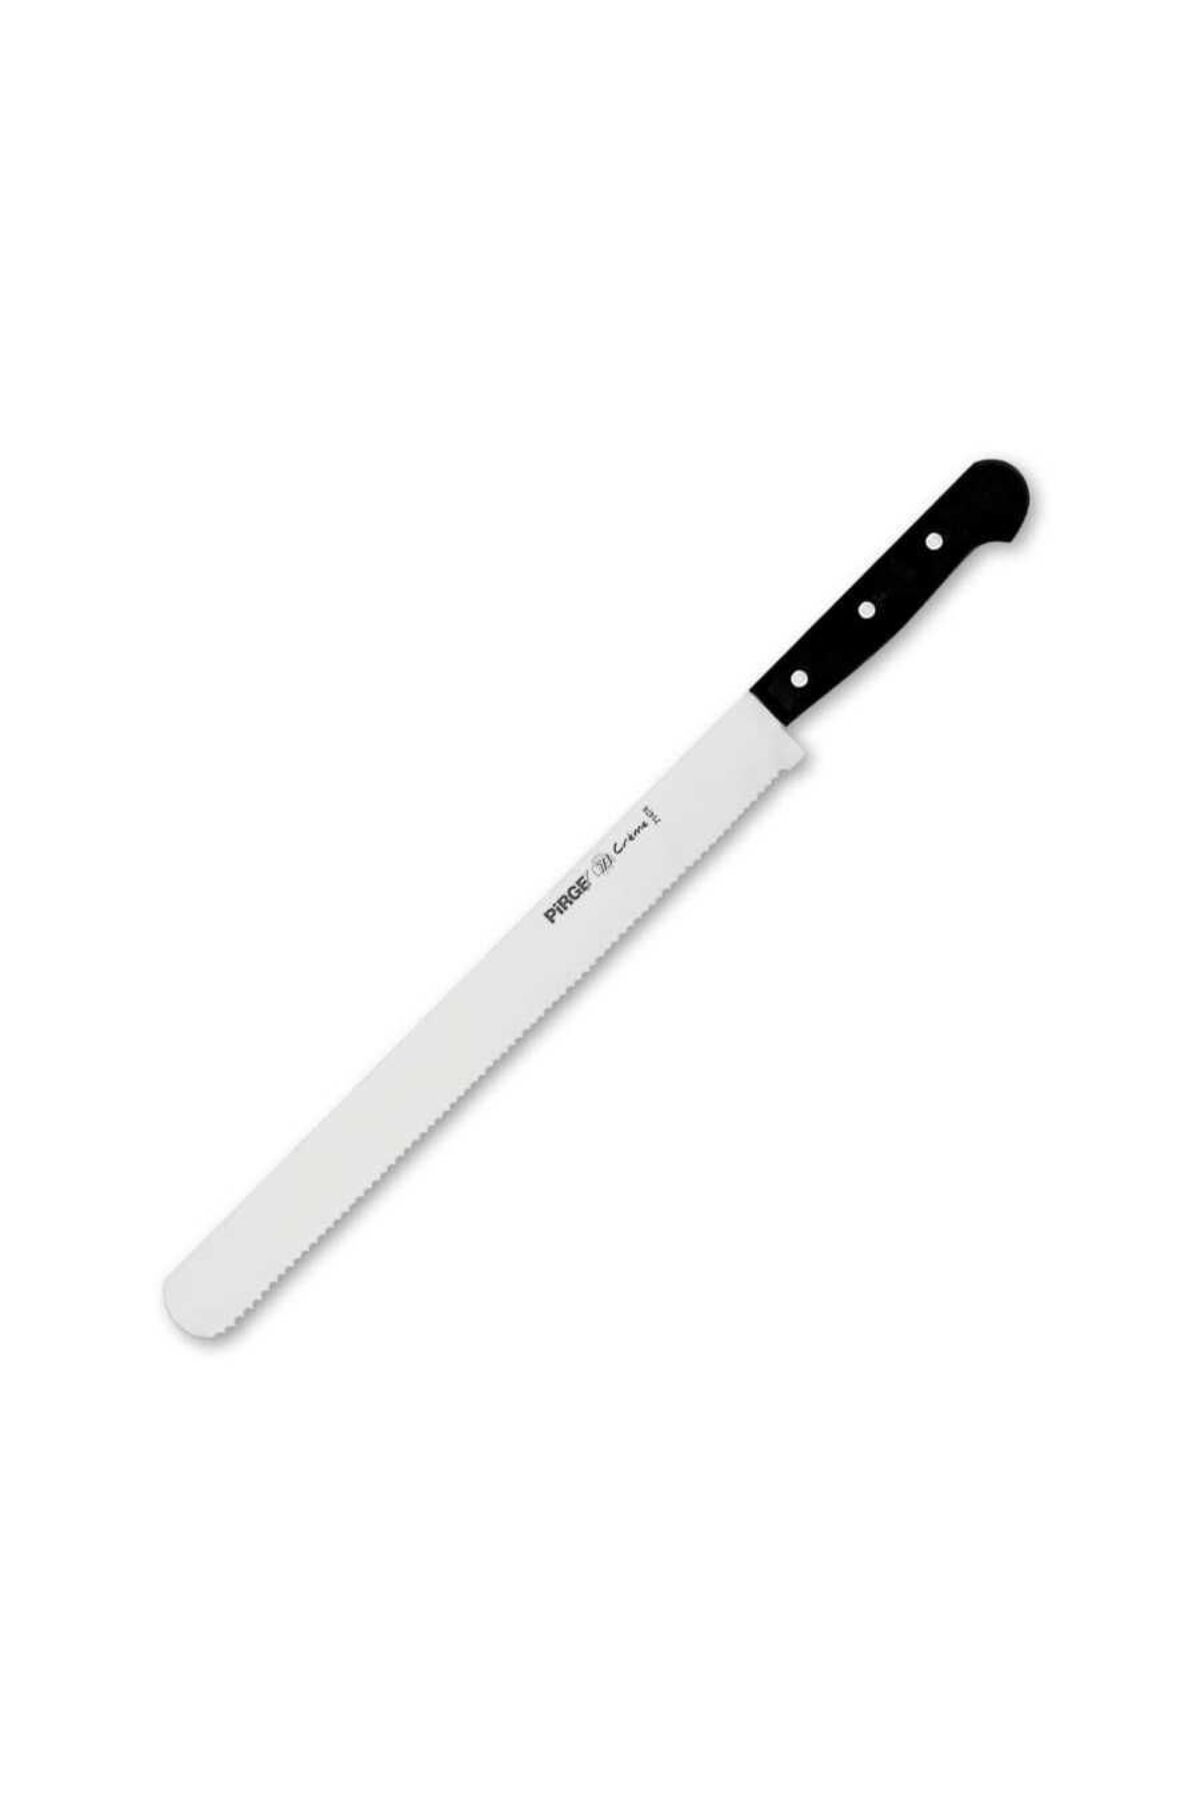 Pirge Pirge Dişli Geniş Pasta Bıçağı 30 Cm 71474